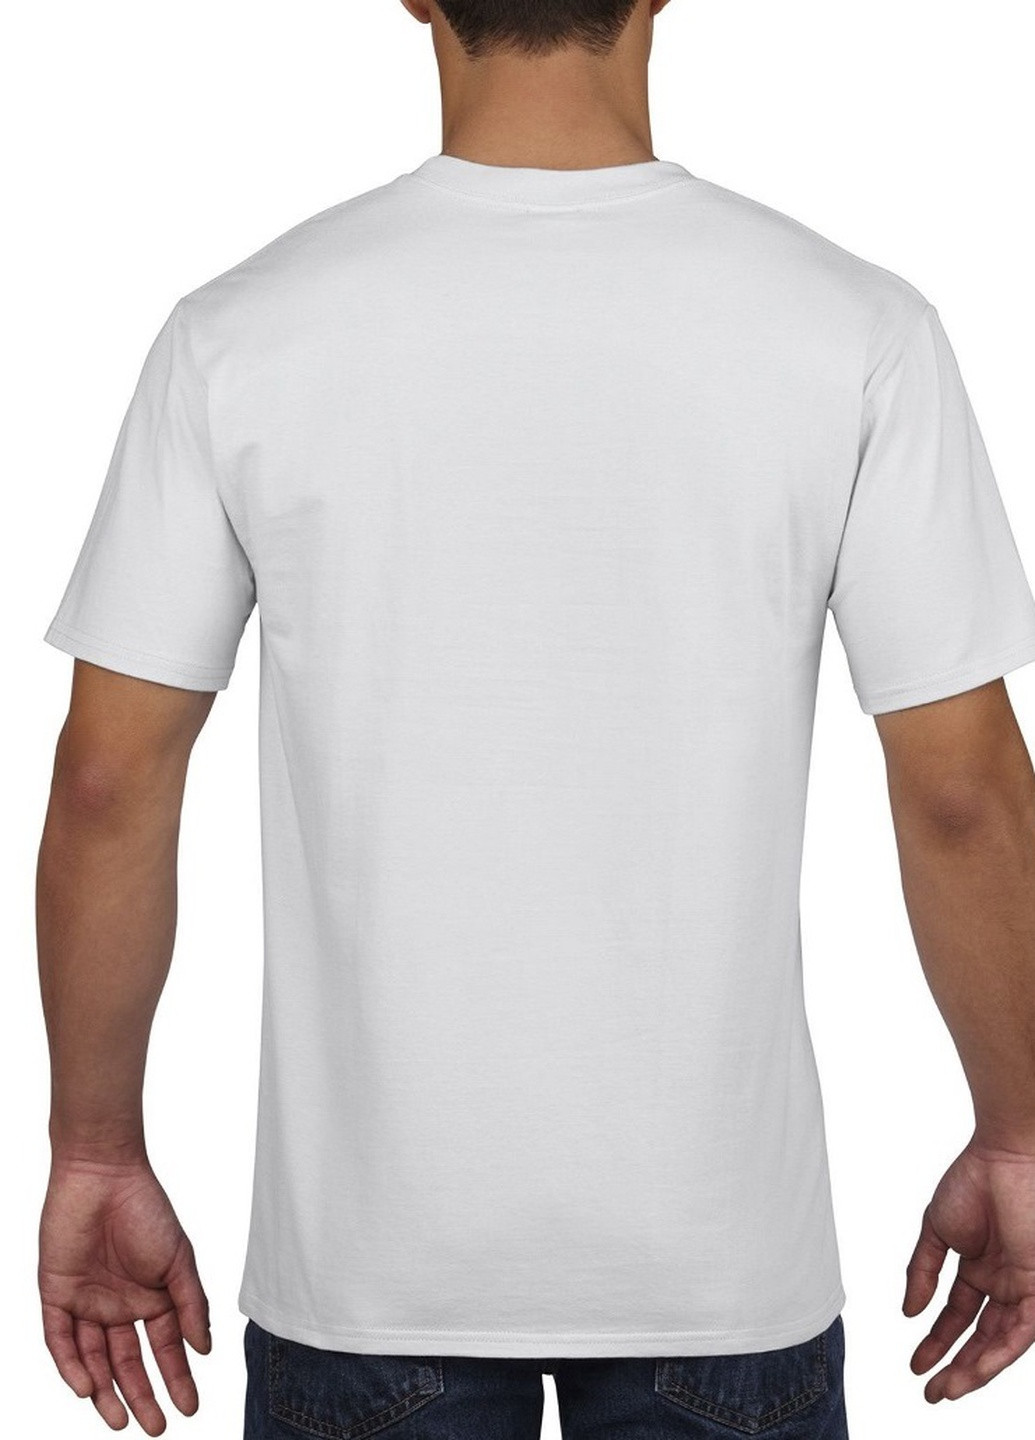 Белая футболка базовая хлопковая белая Gildan Premium Cotton